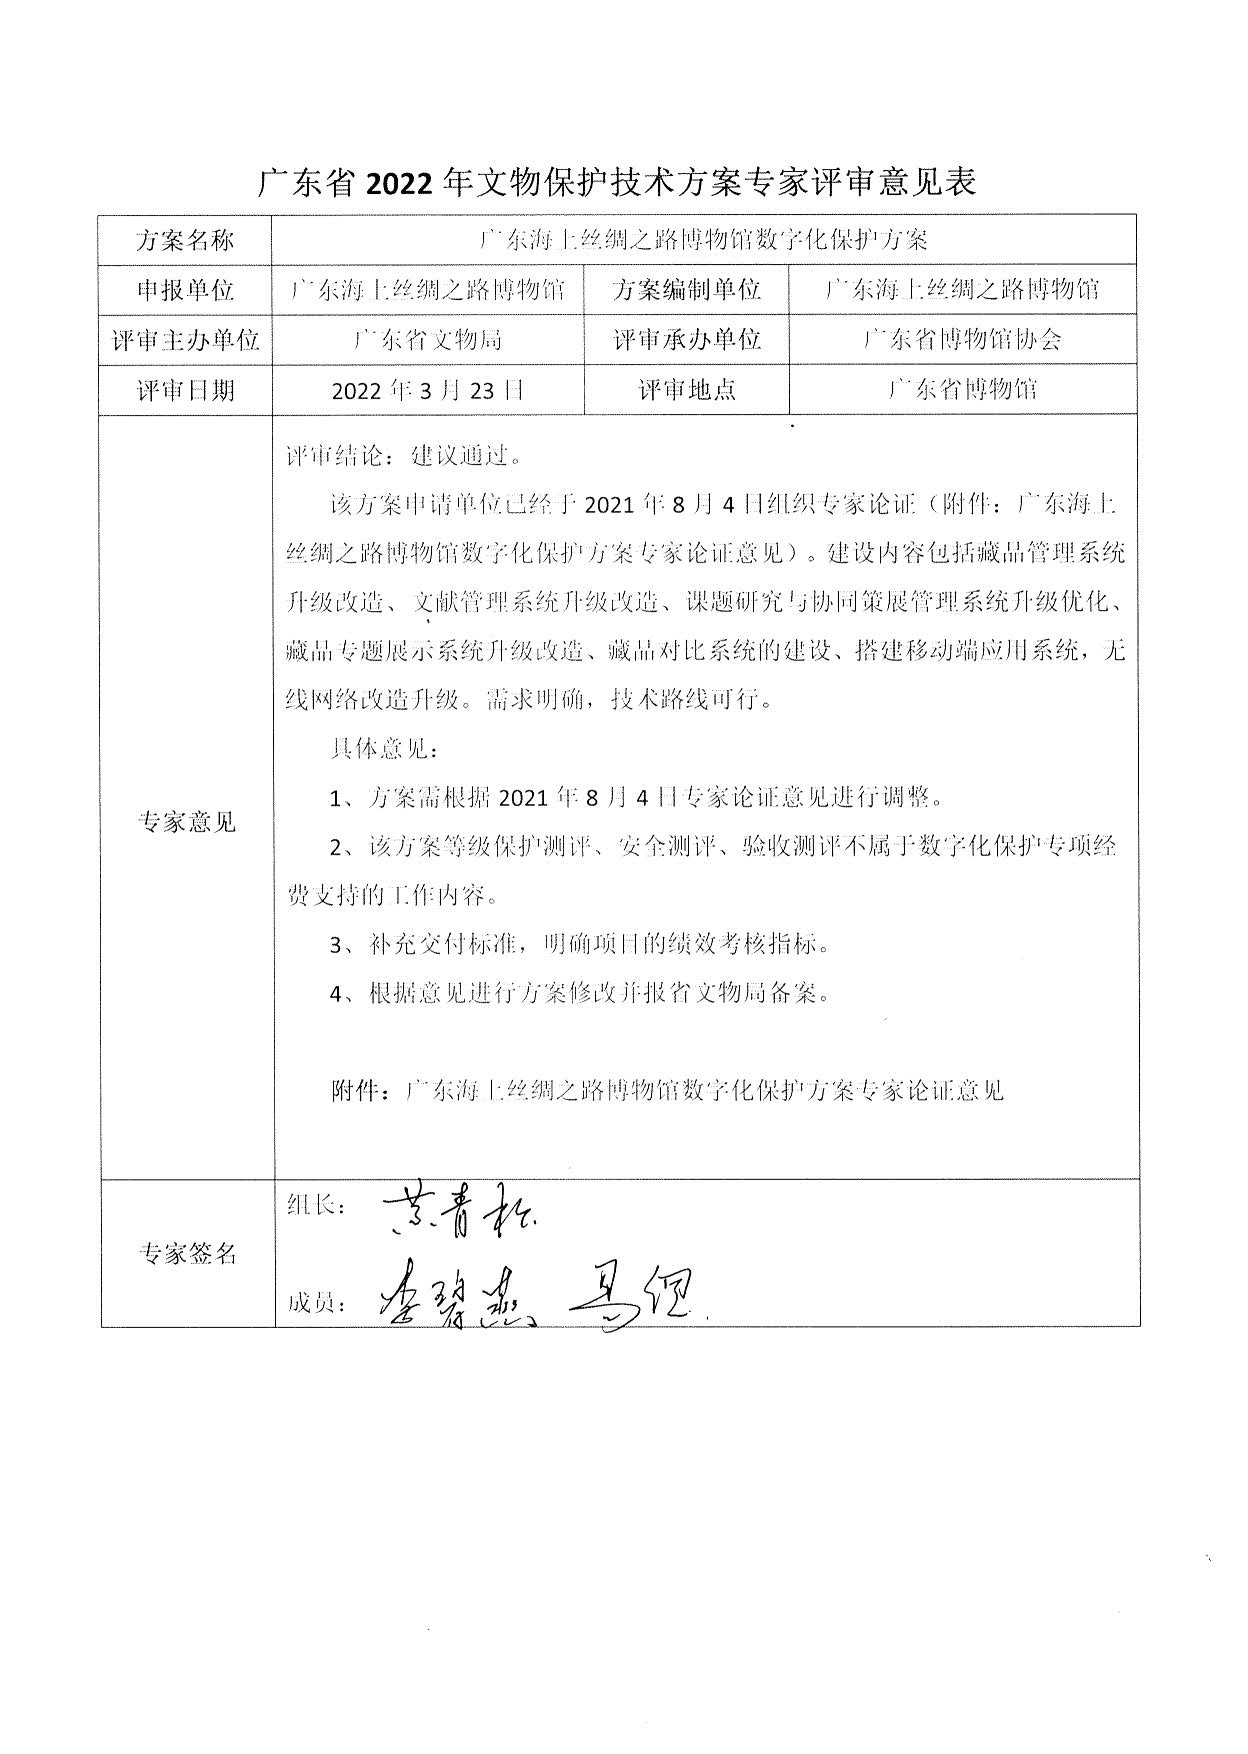 评审结果报告-广东省博物馆协会可移动文物预防性保护和文物数字化保护利用方案2022年3月评审结果报告_16.jpg